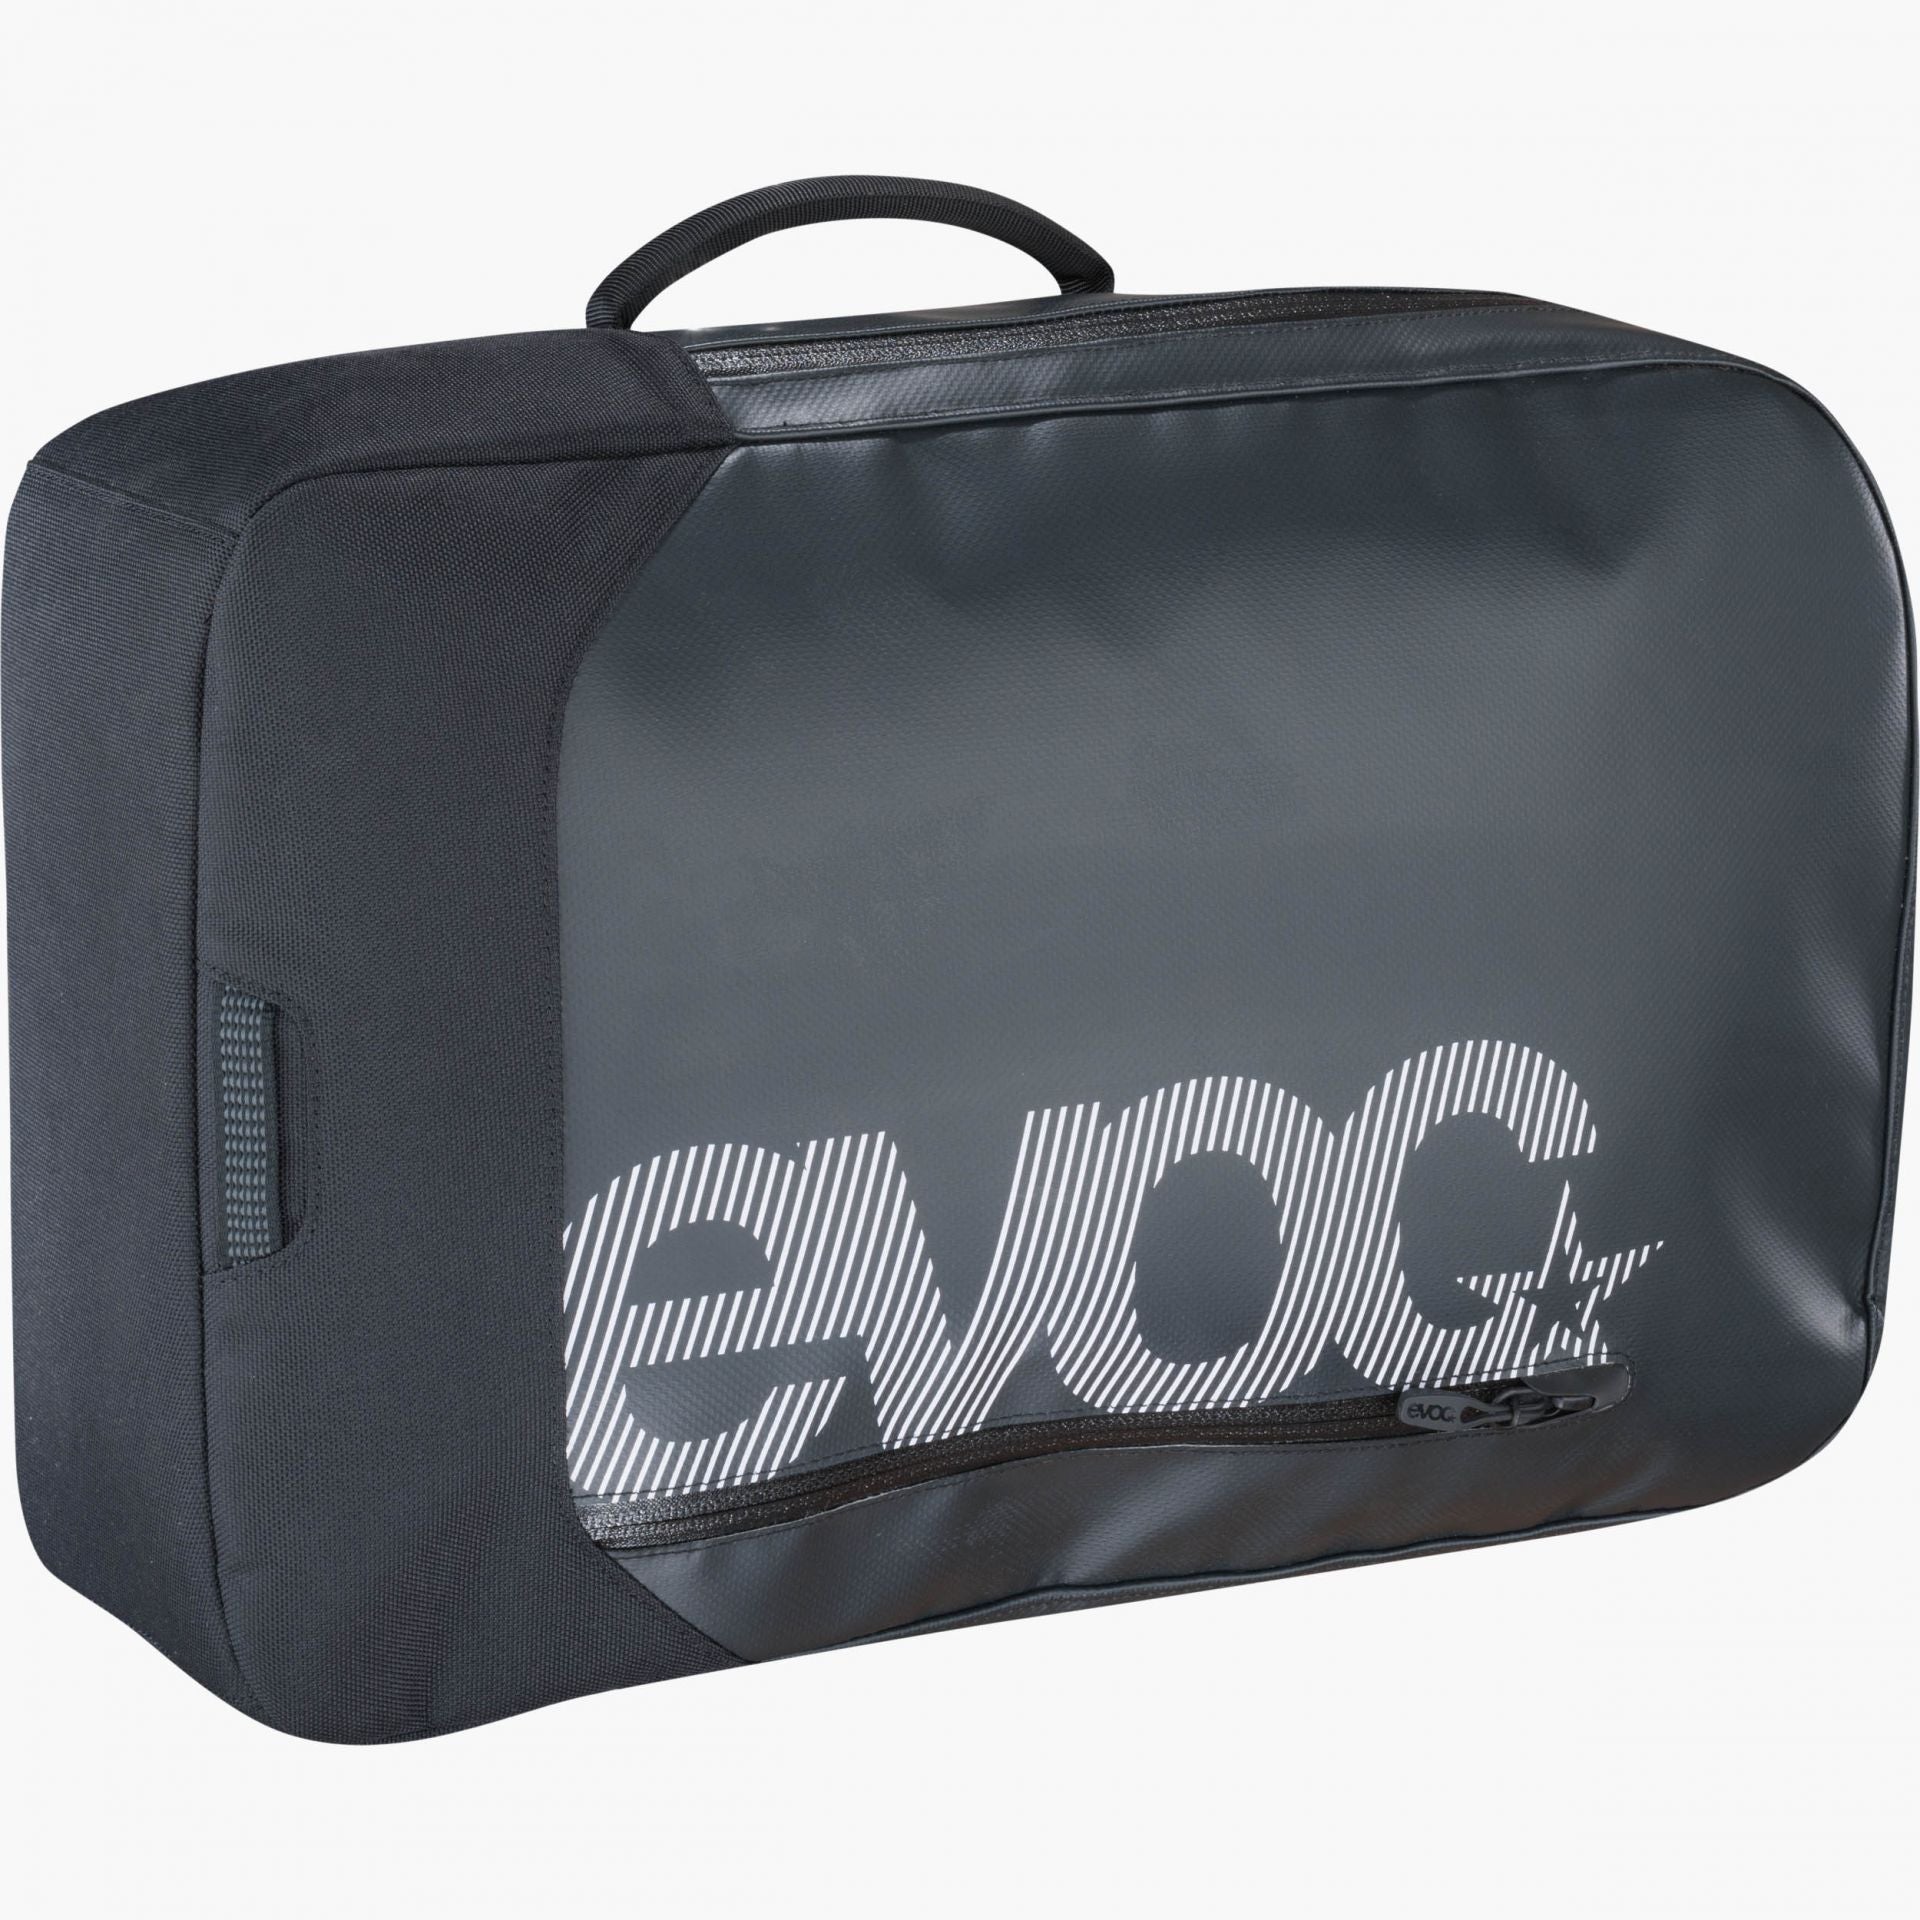 EVOC - Commuter 18 Backpack